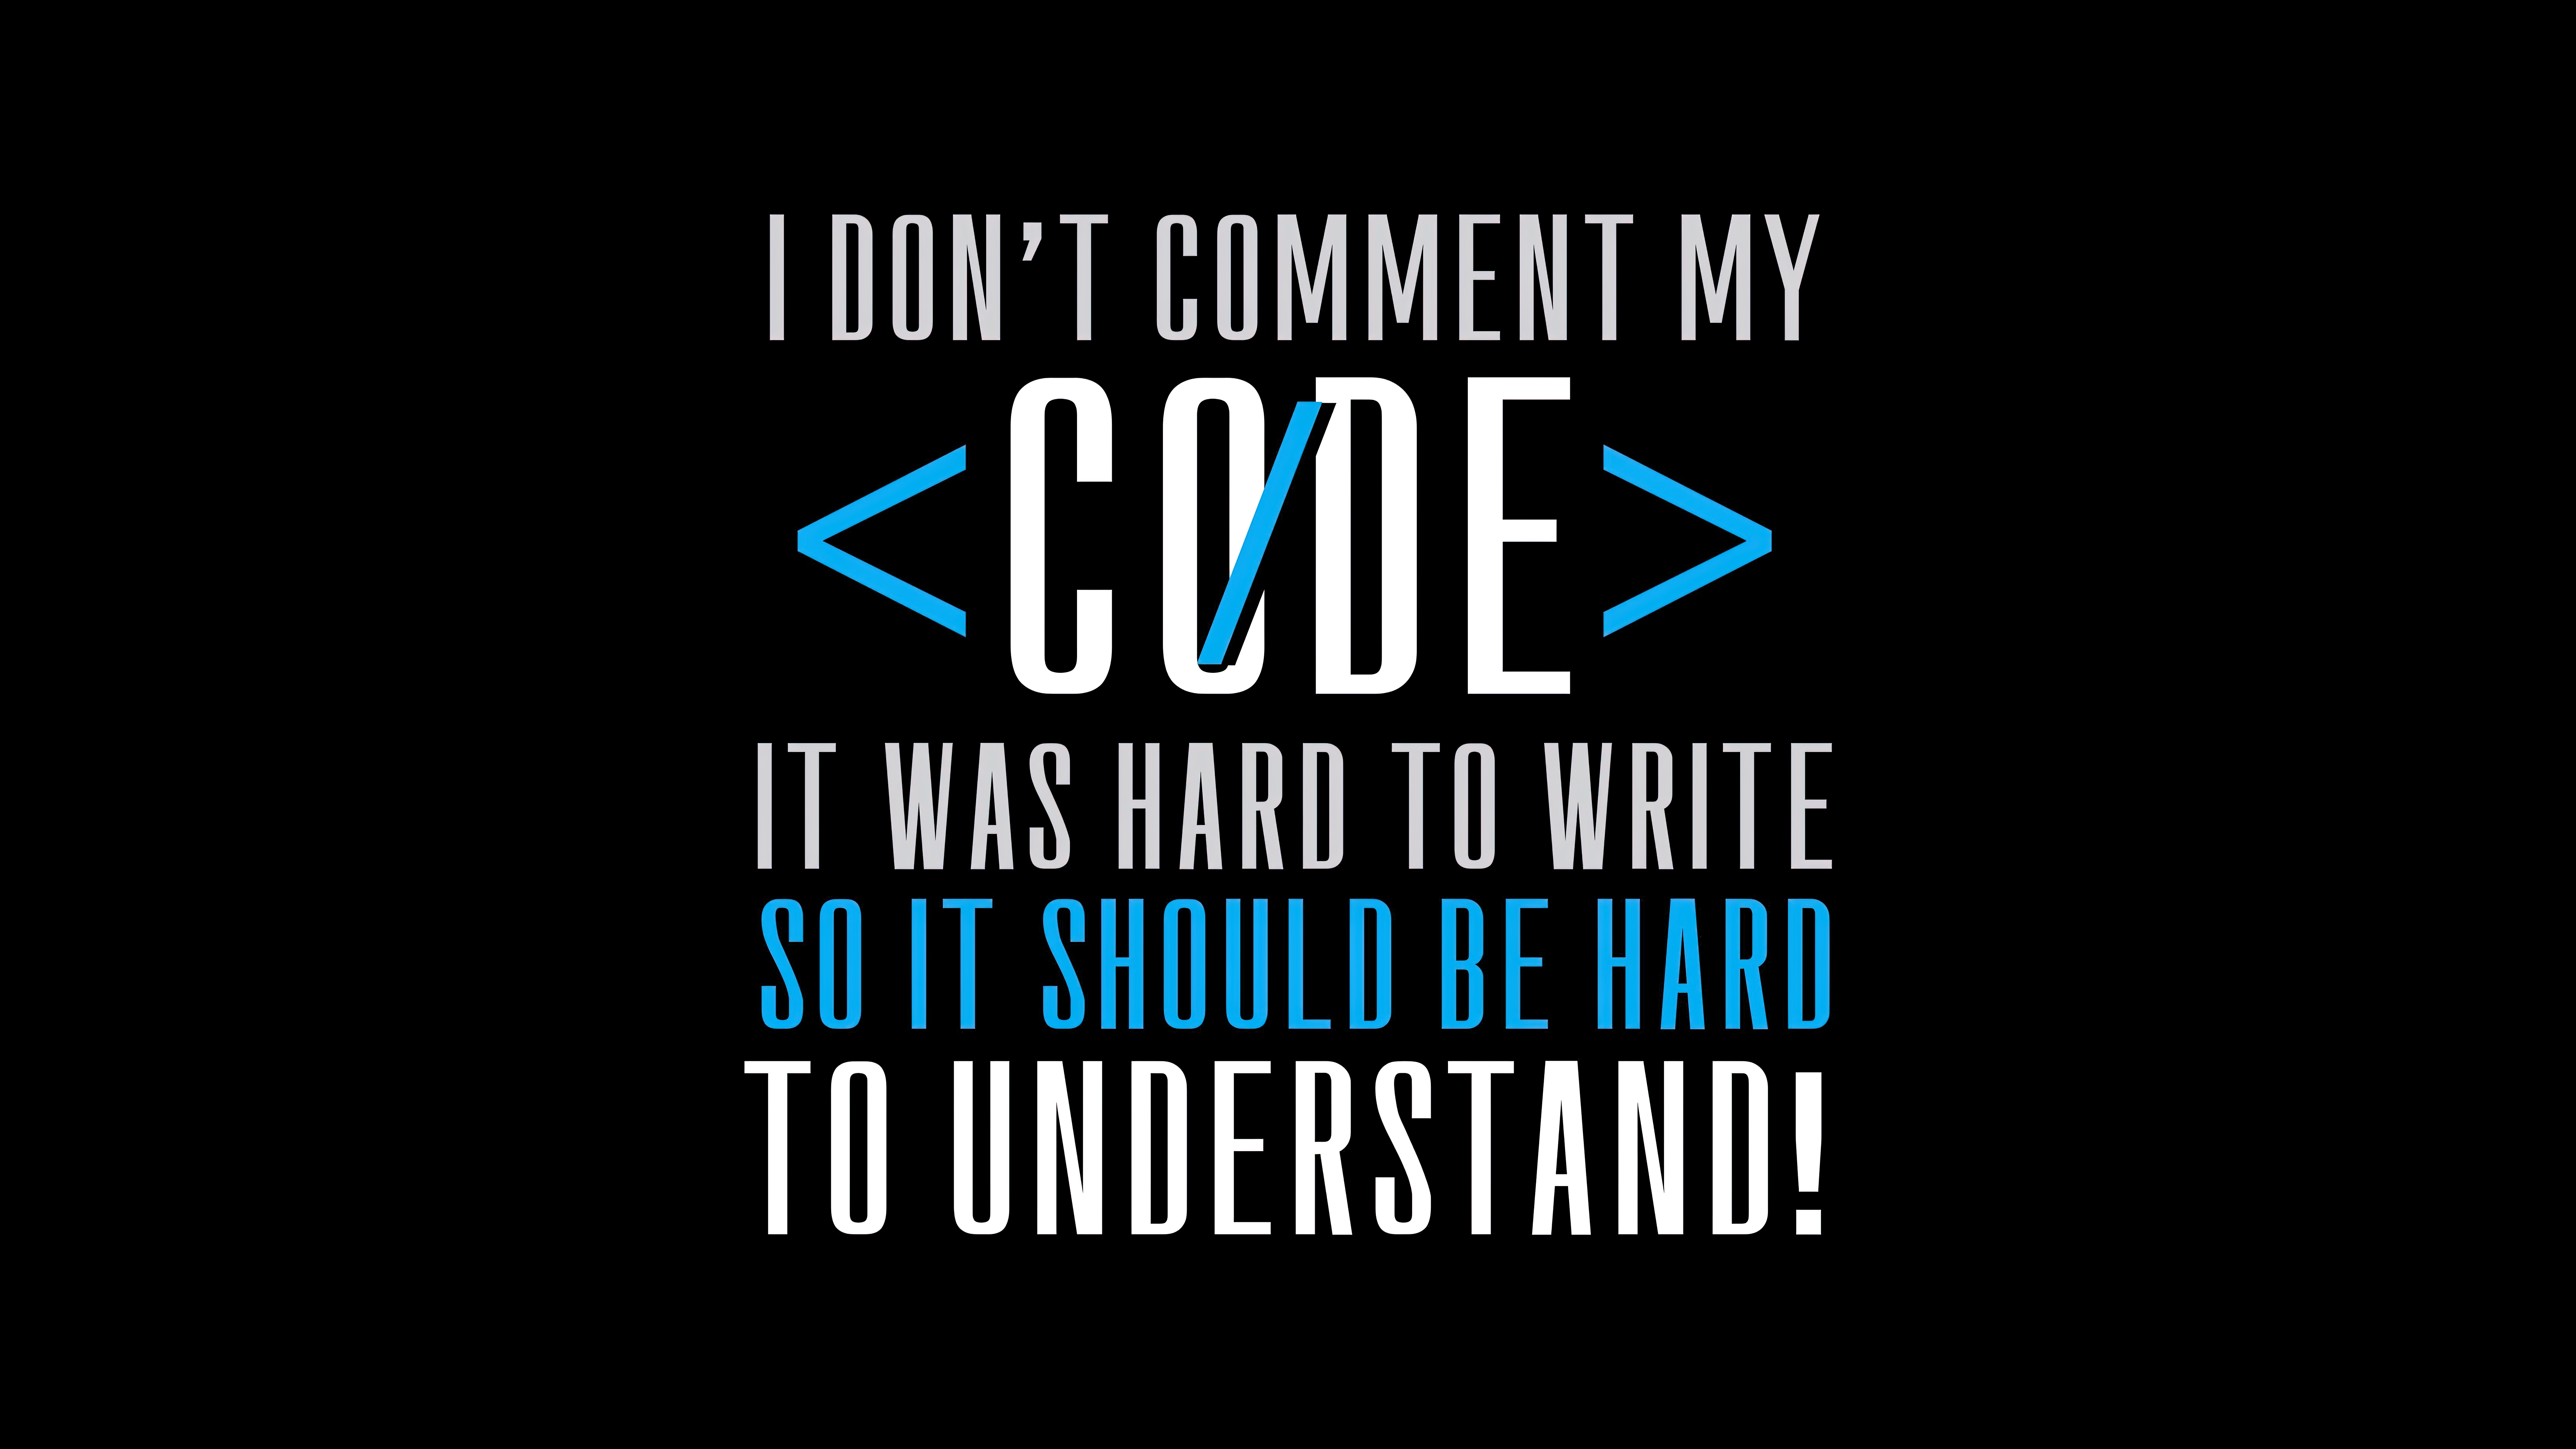 HD wallpaper, 8K, Meme, Amoled, Developer, 5K, Funny, Programming, Coder, Programmer Quotes, Coding